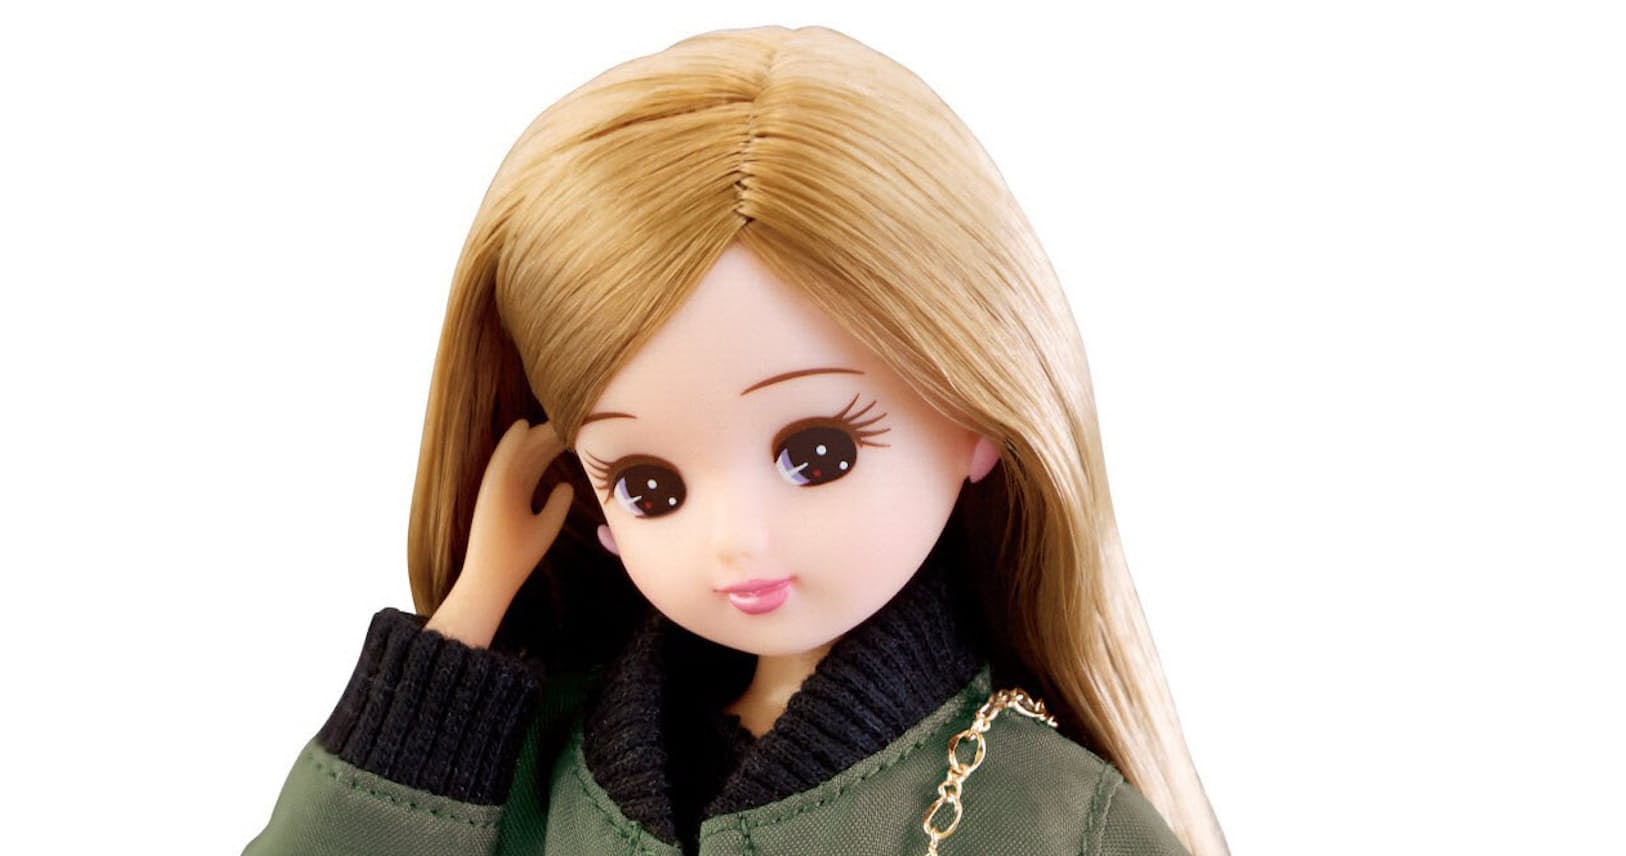 リカちゃん人形 誕生50年 時代映し続けるアイドル エンタメ Nikkei Style